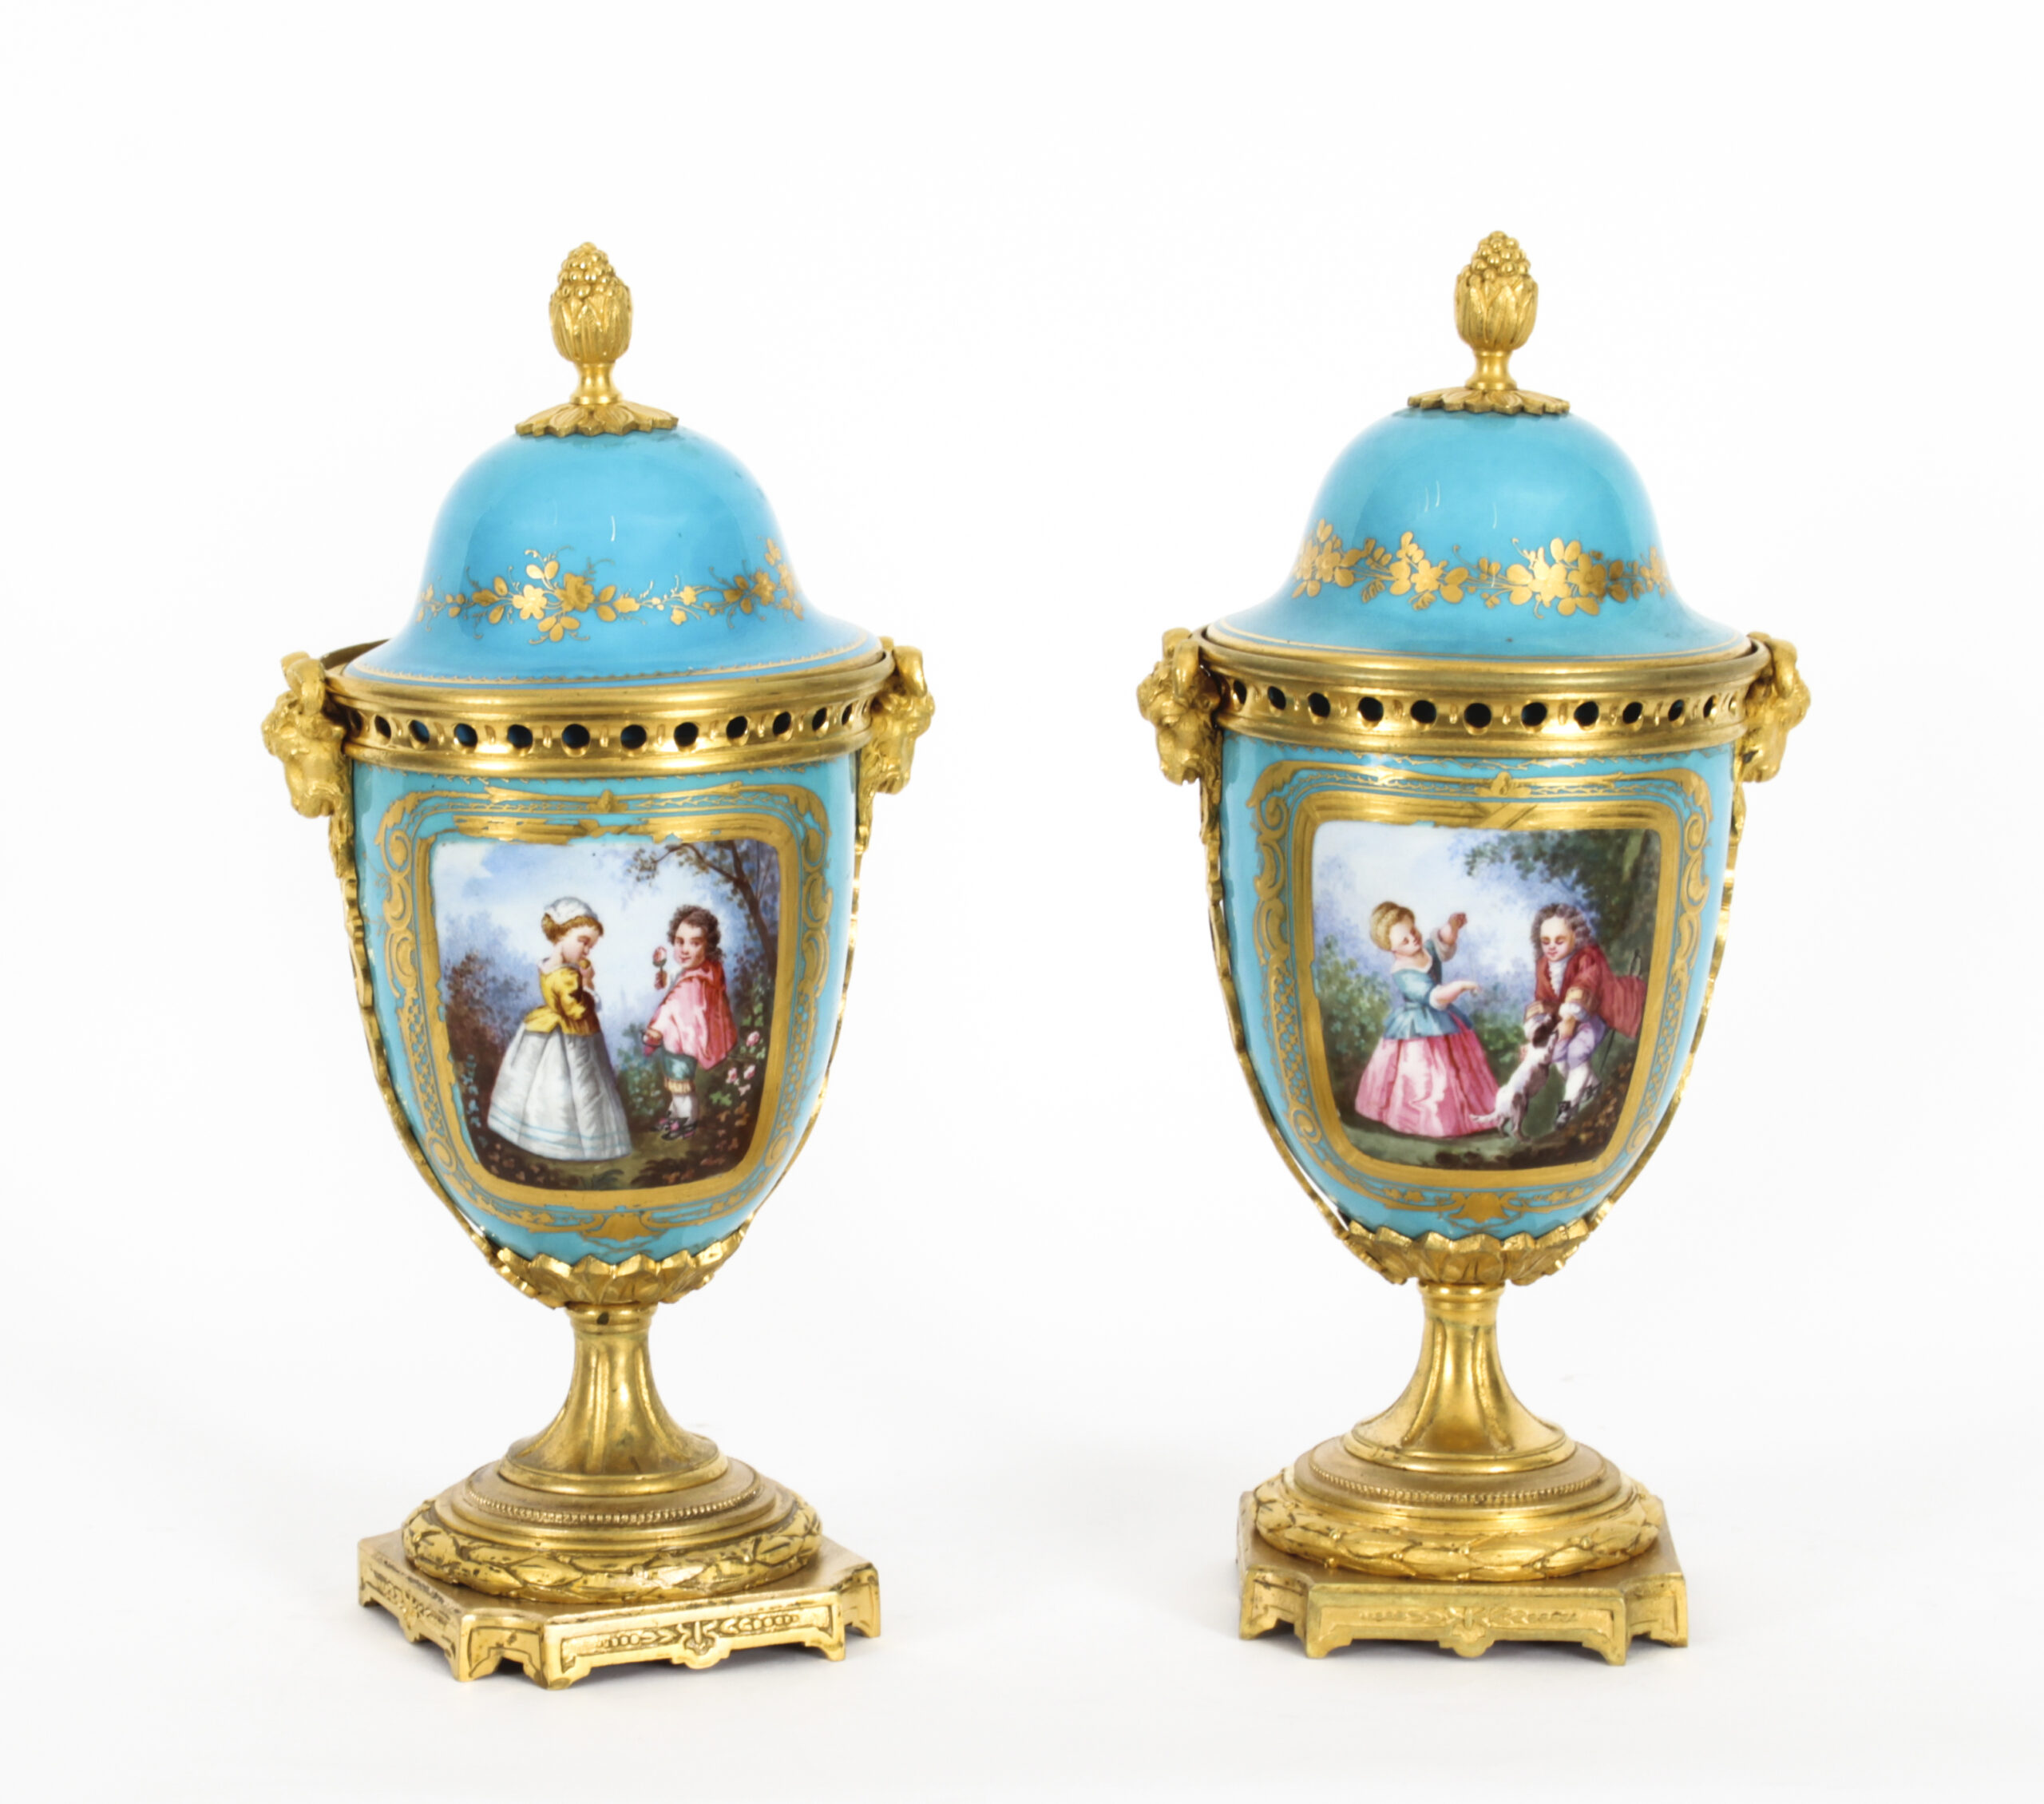 pair of late 19th century French gilt Sèvres porcelain pot pourri vases